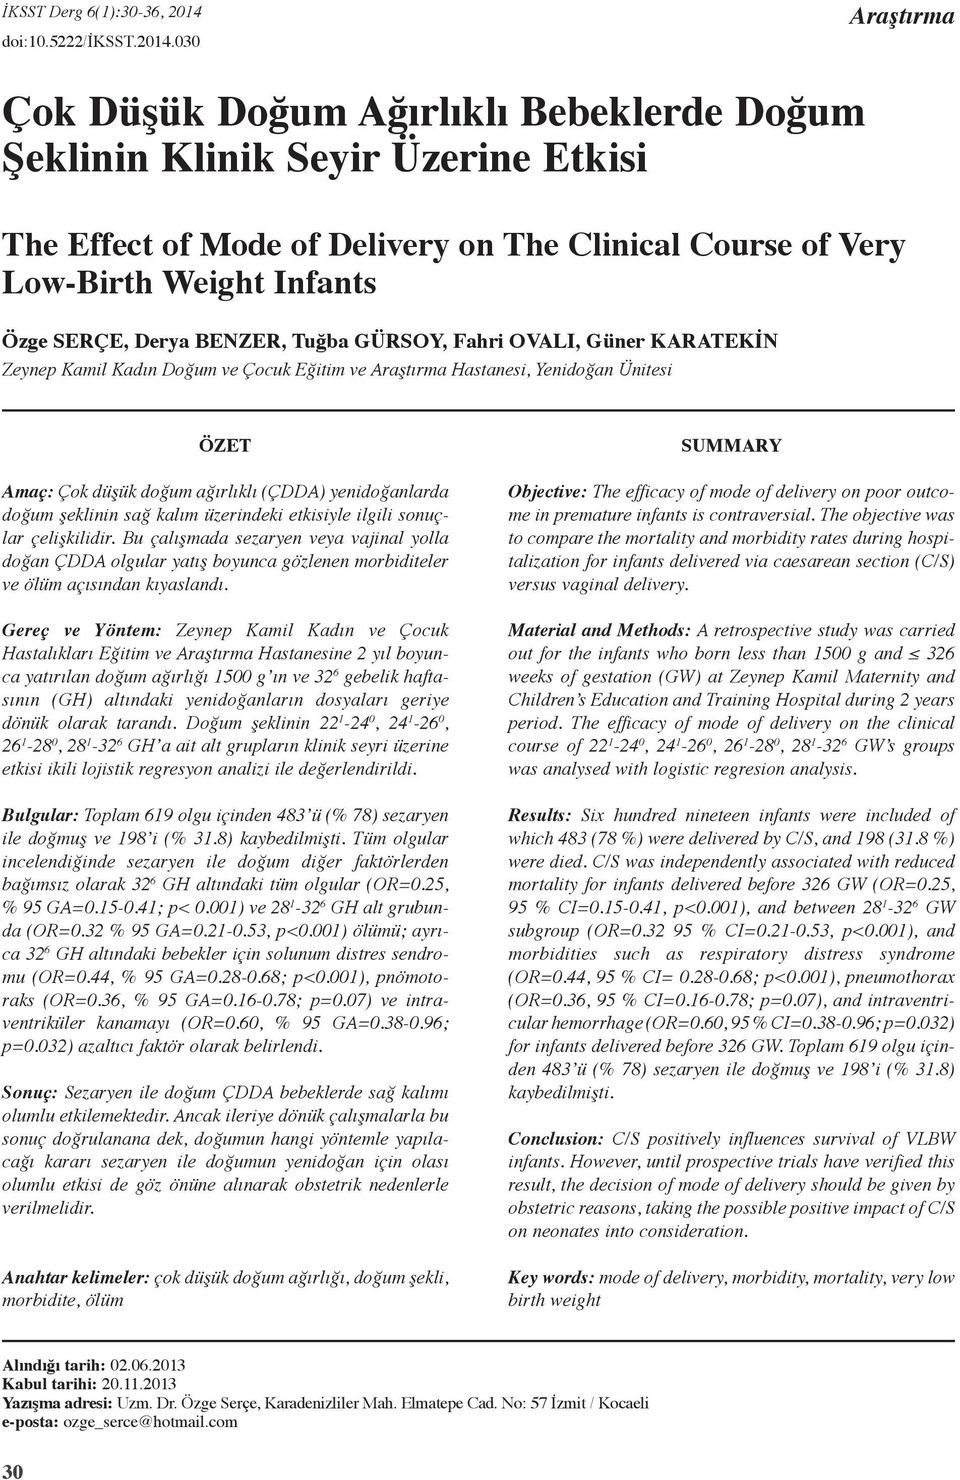 3 Araştırma Çok Düşük Doğum Ağırlıklı Bebeklerde Doğum Şeklinin Klinik Seyir Üzerine Etkisi The Effect of Mode of Delivery on The Clinical Course of Very Low-Birth Weight Infants Özge Serçe, Derya